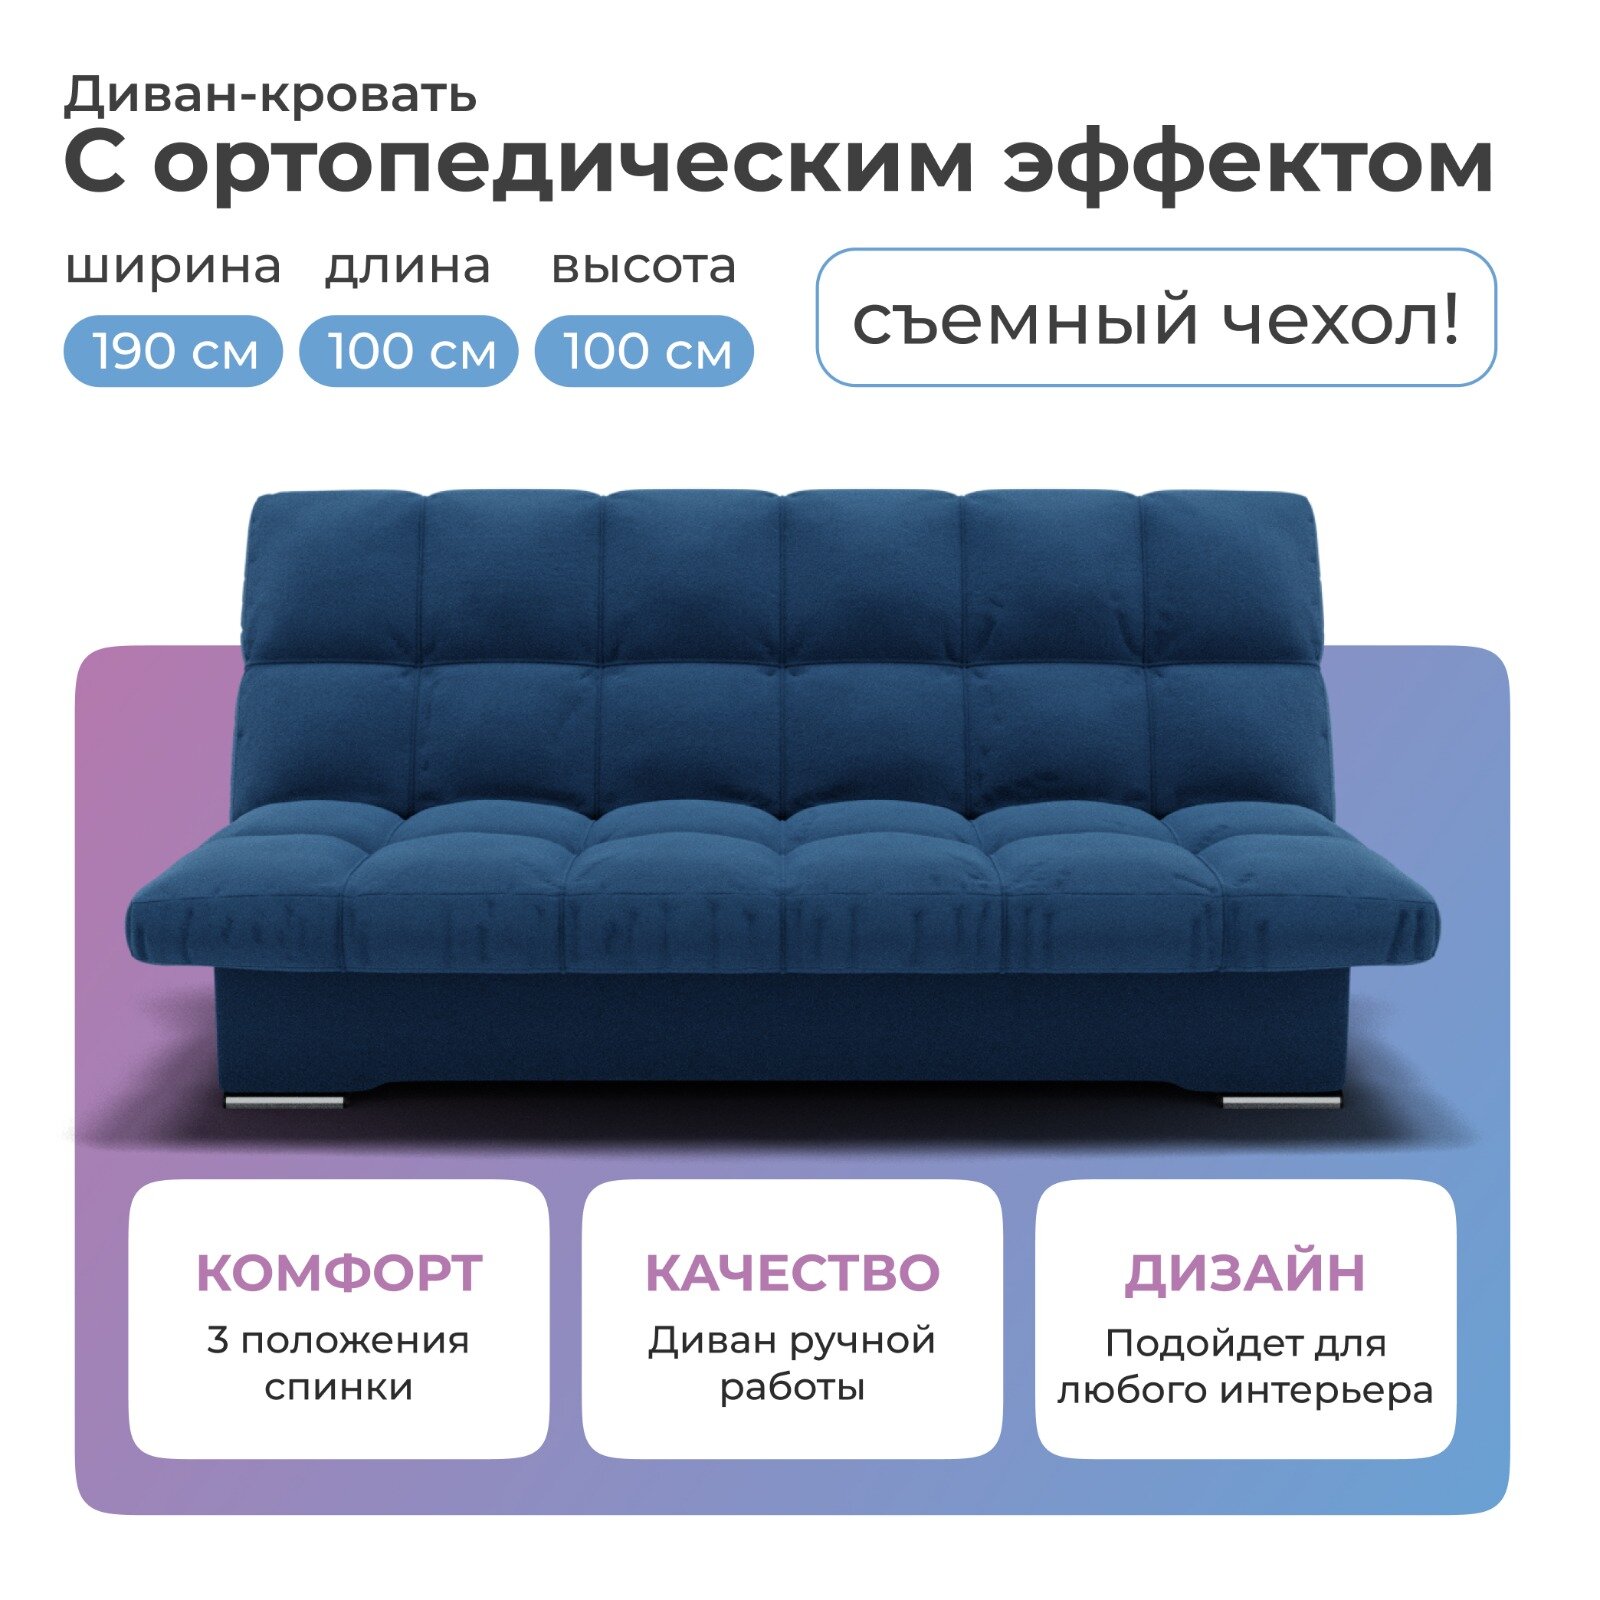 Диван-кровать Финка темно-синего цвета 190х100 см